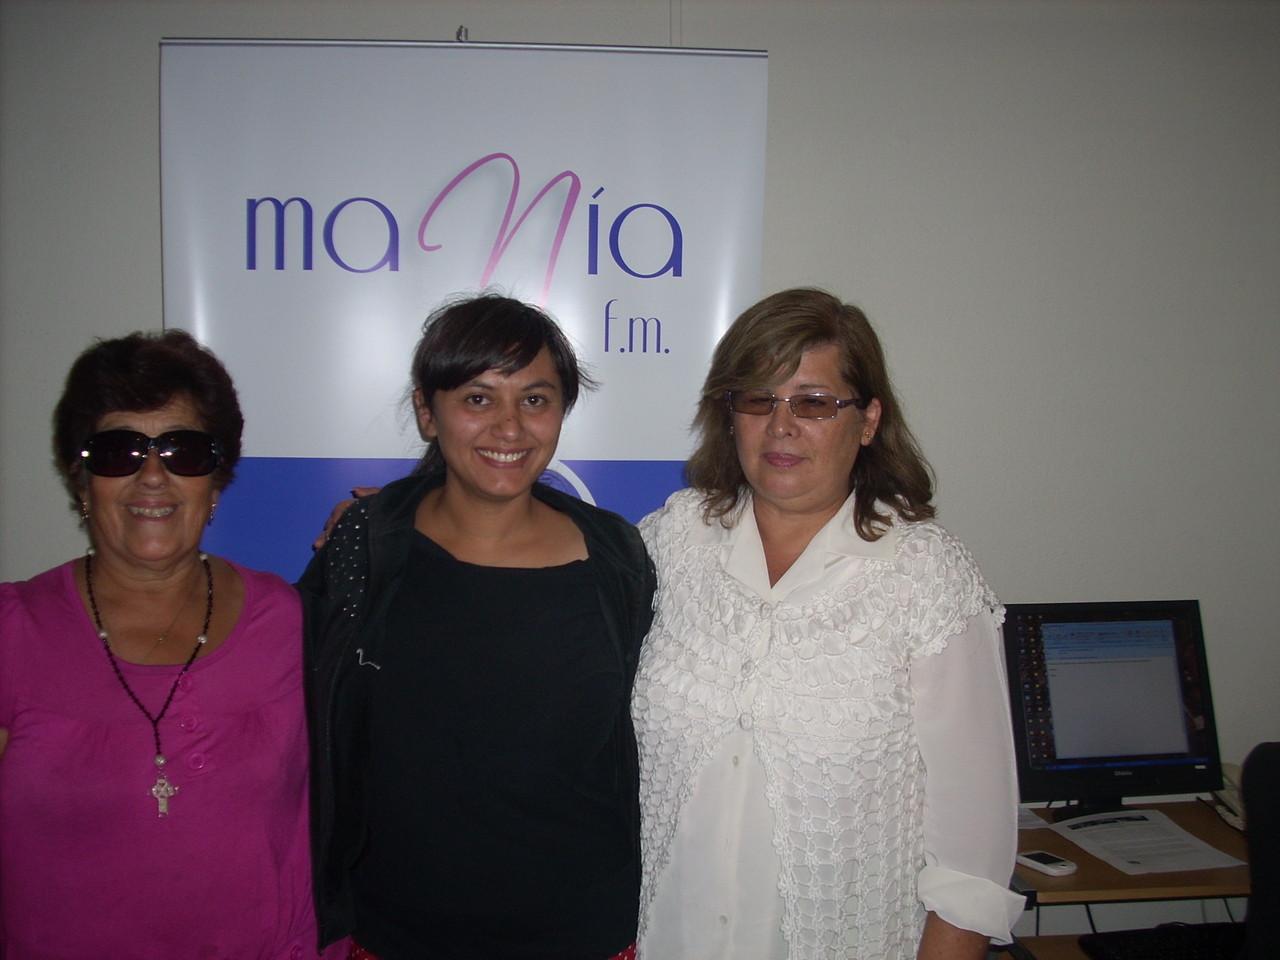 Visita a Radio Manía FM año 2012